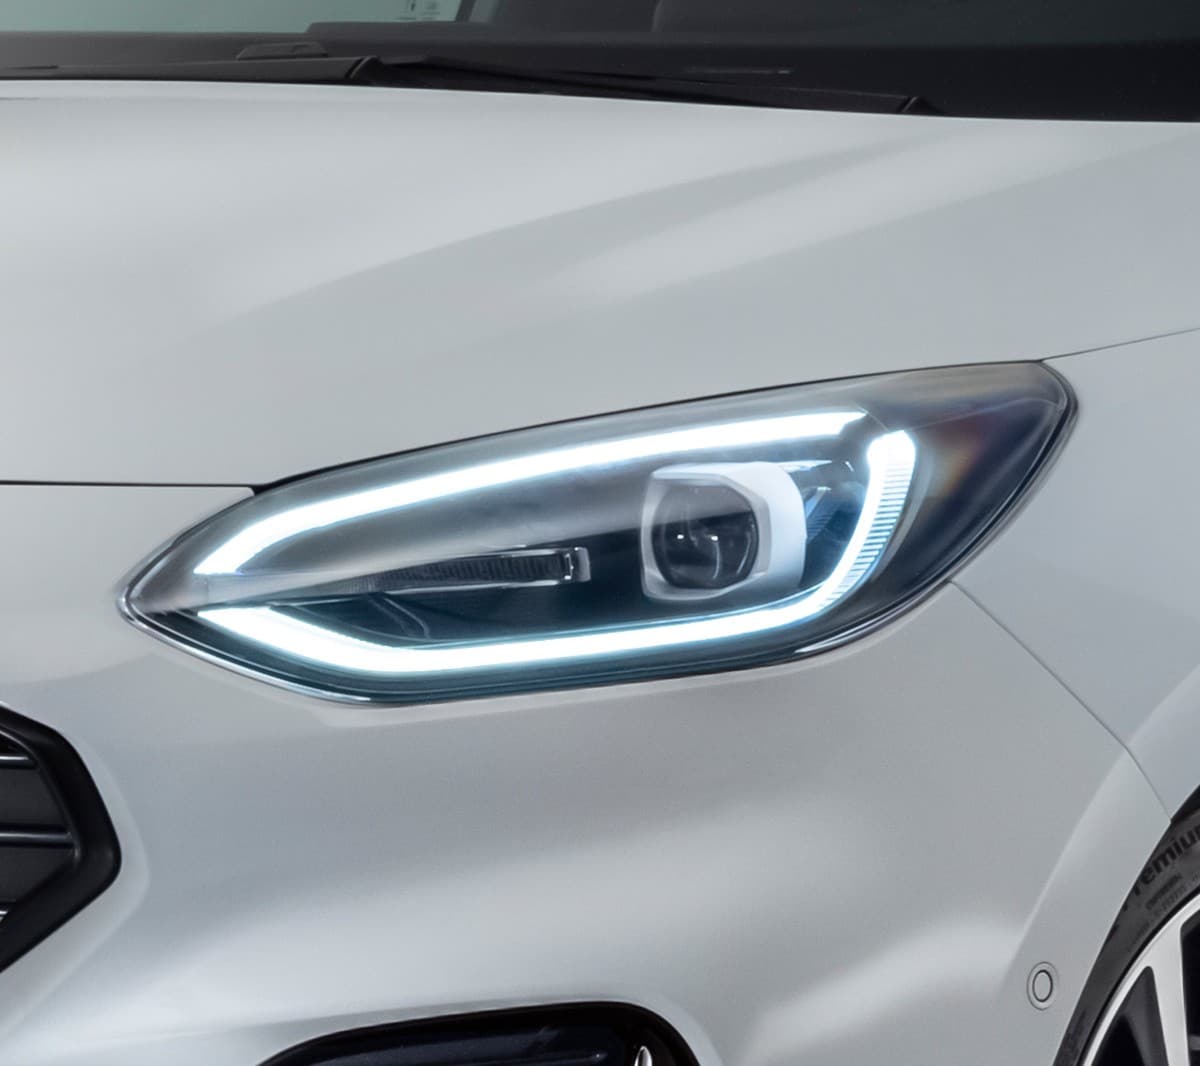 Ford Fiesta in Weiß. Frontansicht, mit Fokus auf den LED-Scheinwerfer.